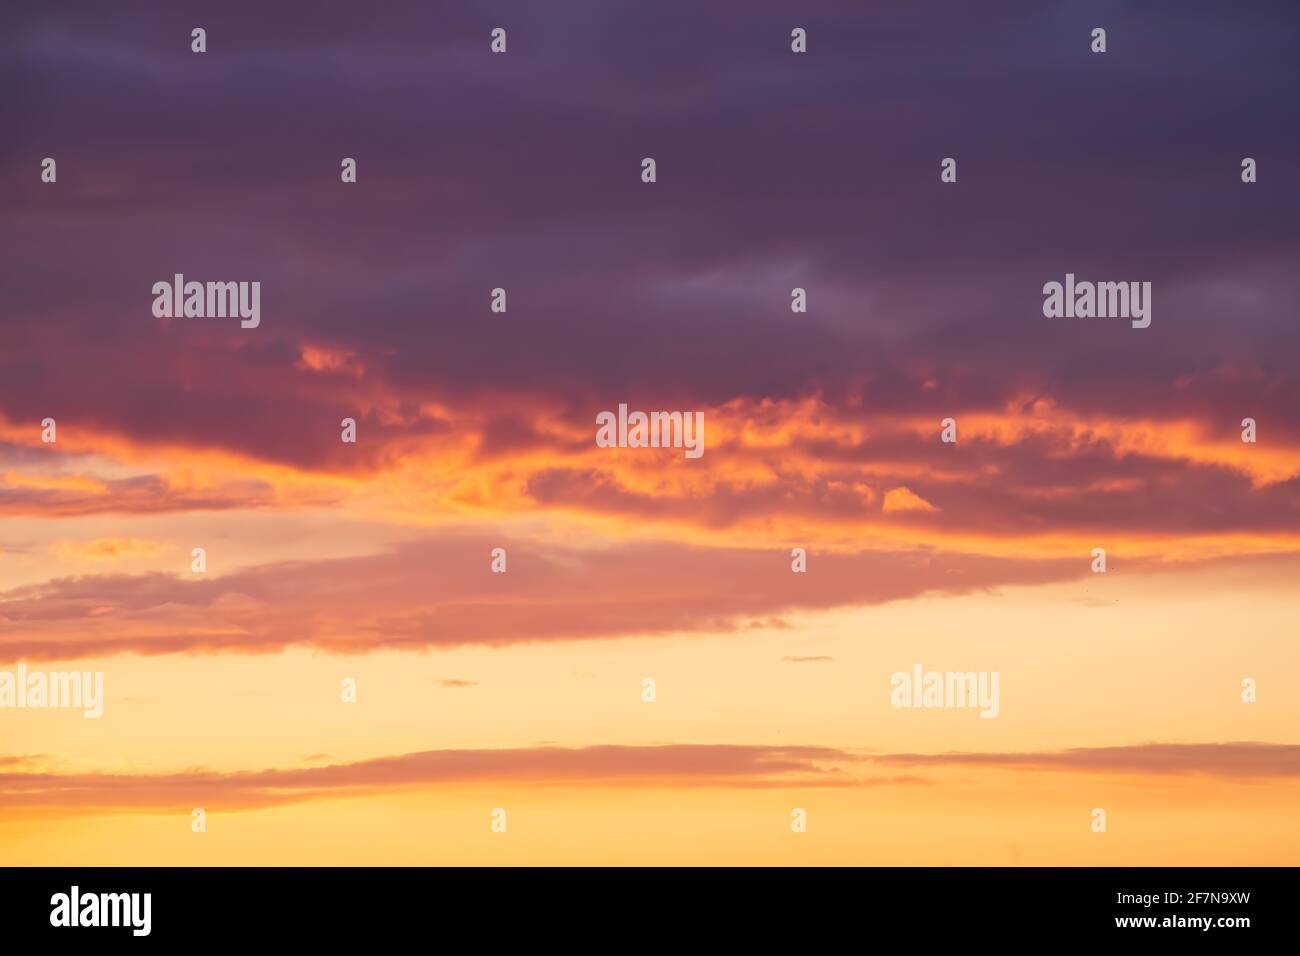 Helle violette oder violette Wolken auf epischem orangefarbenem Sonnenuntergang am Himmel. Stockfoto